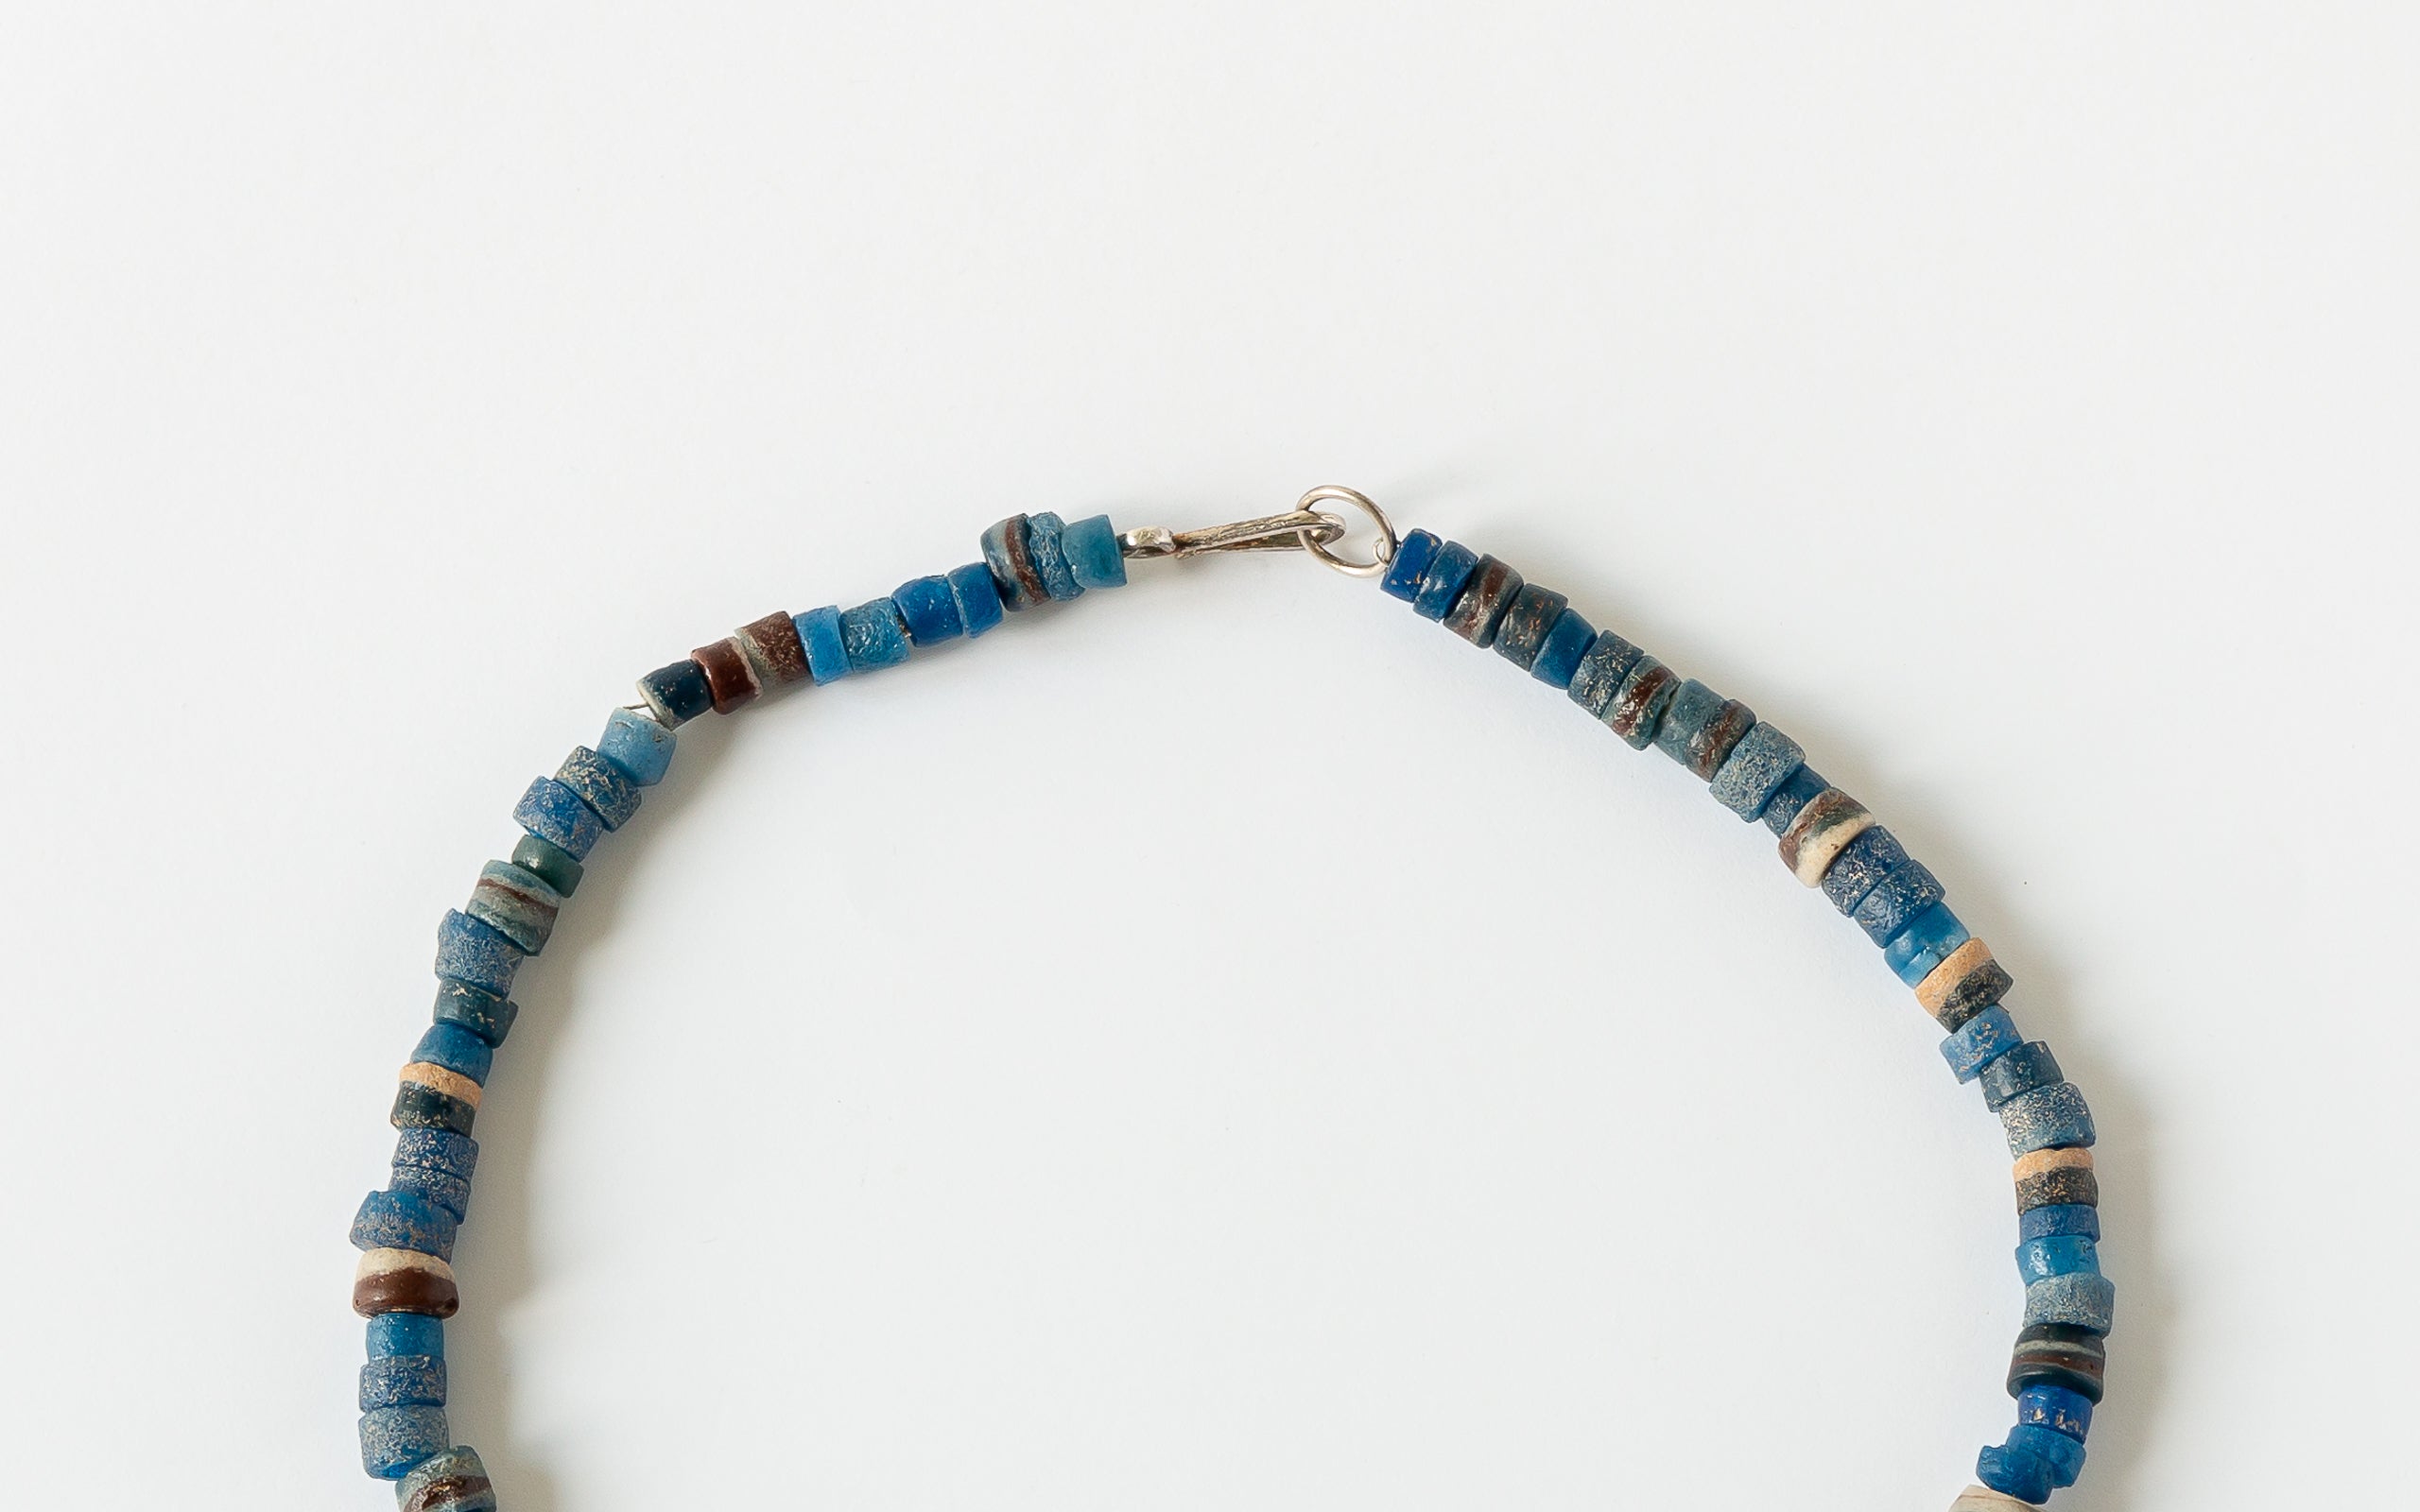 Halskette aus alten Ashanti Perlen in Blautönen  Detail Silberhakenverschluss.